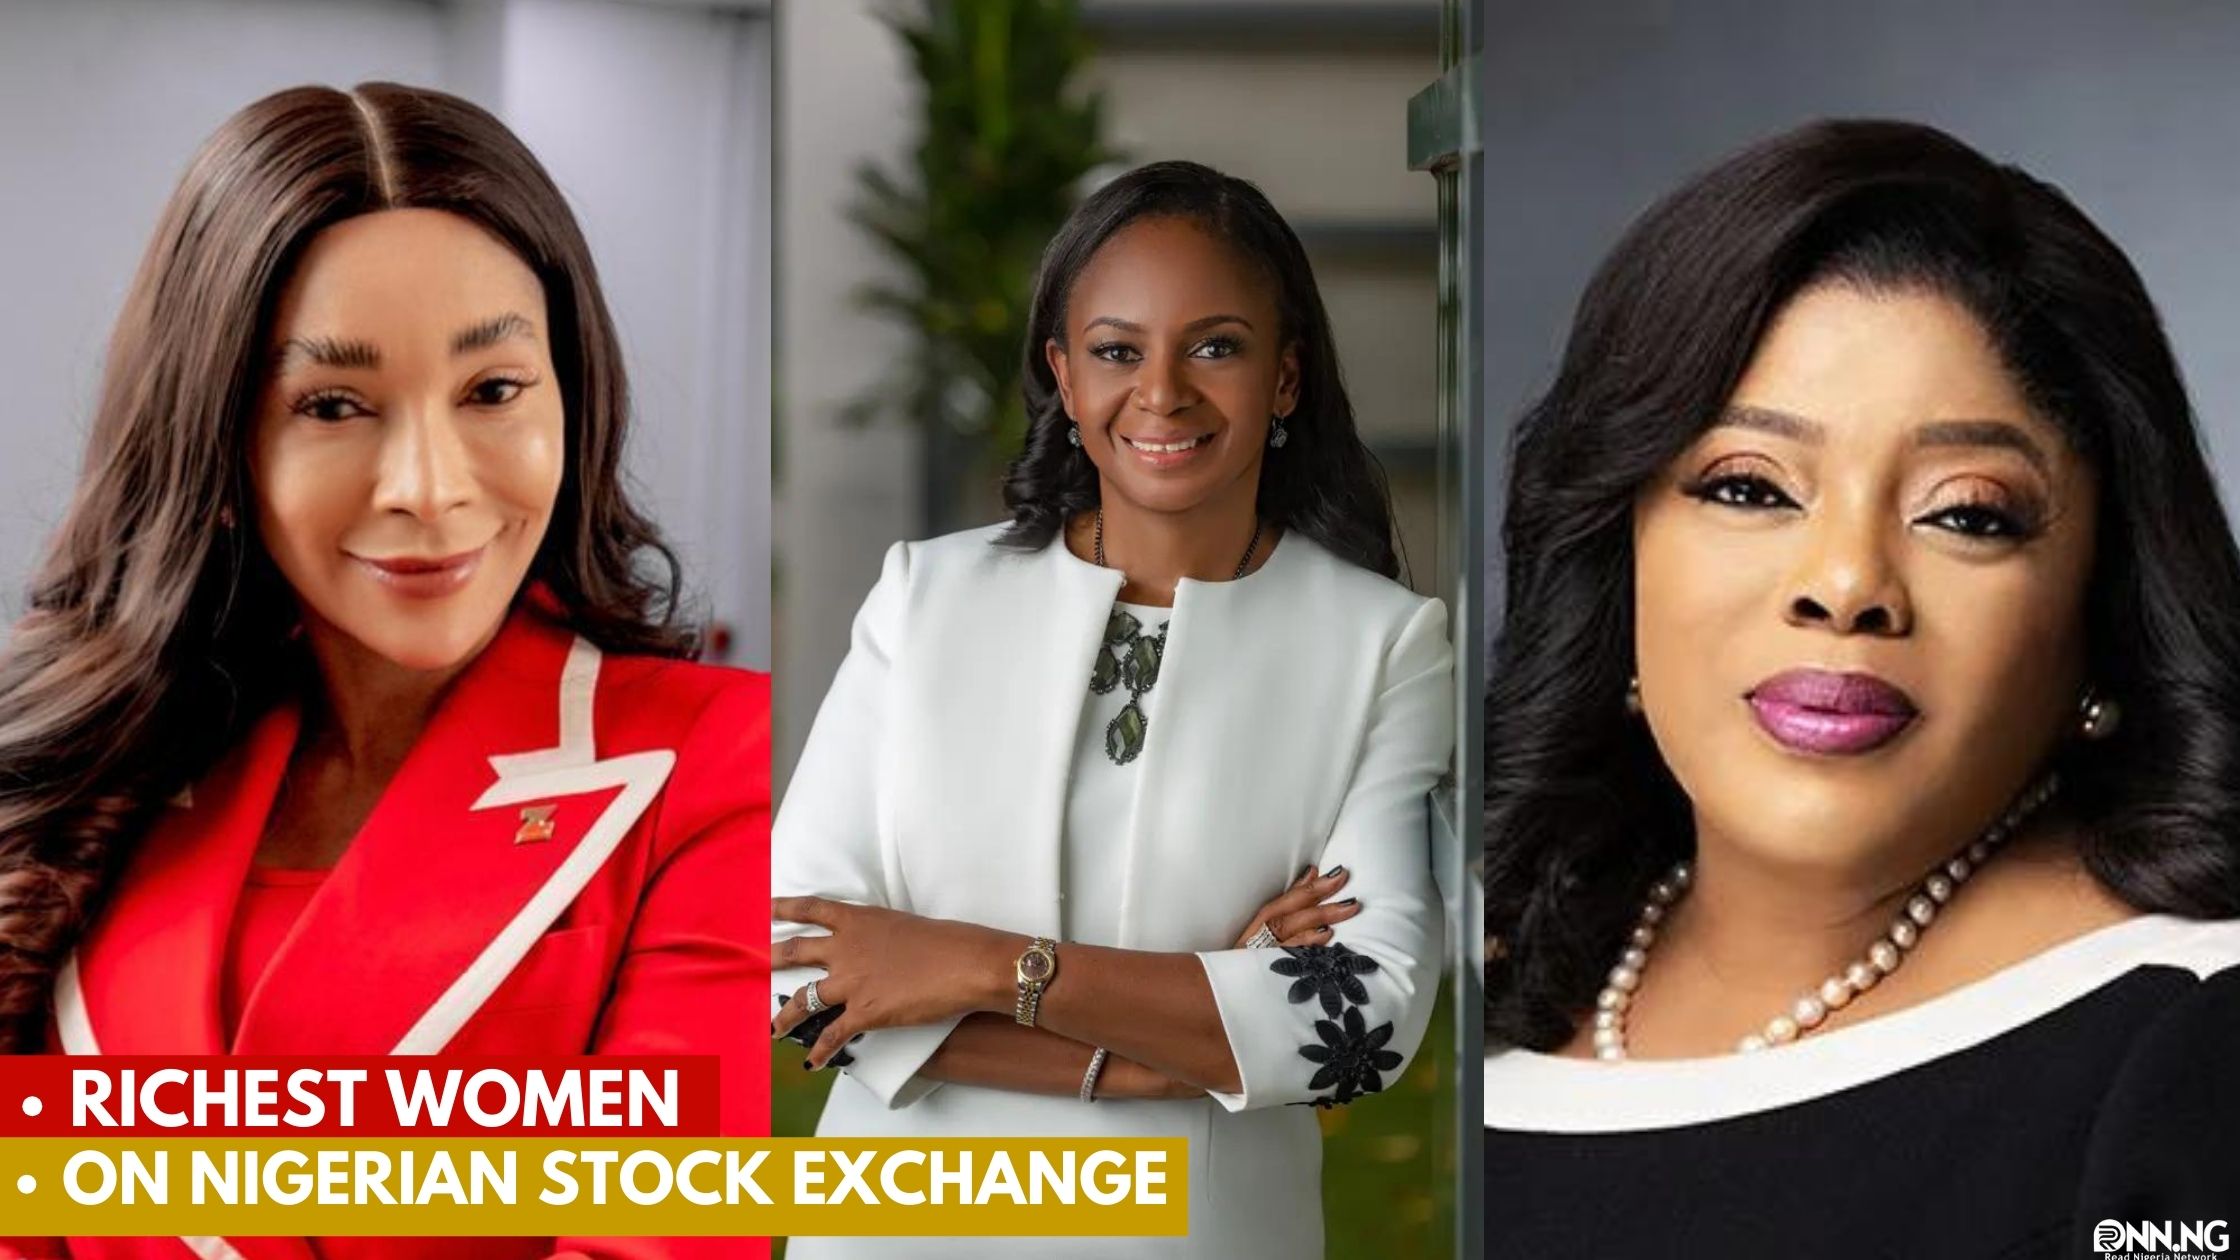 Richest Women on Nigerian Stock Exchange